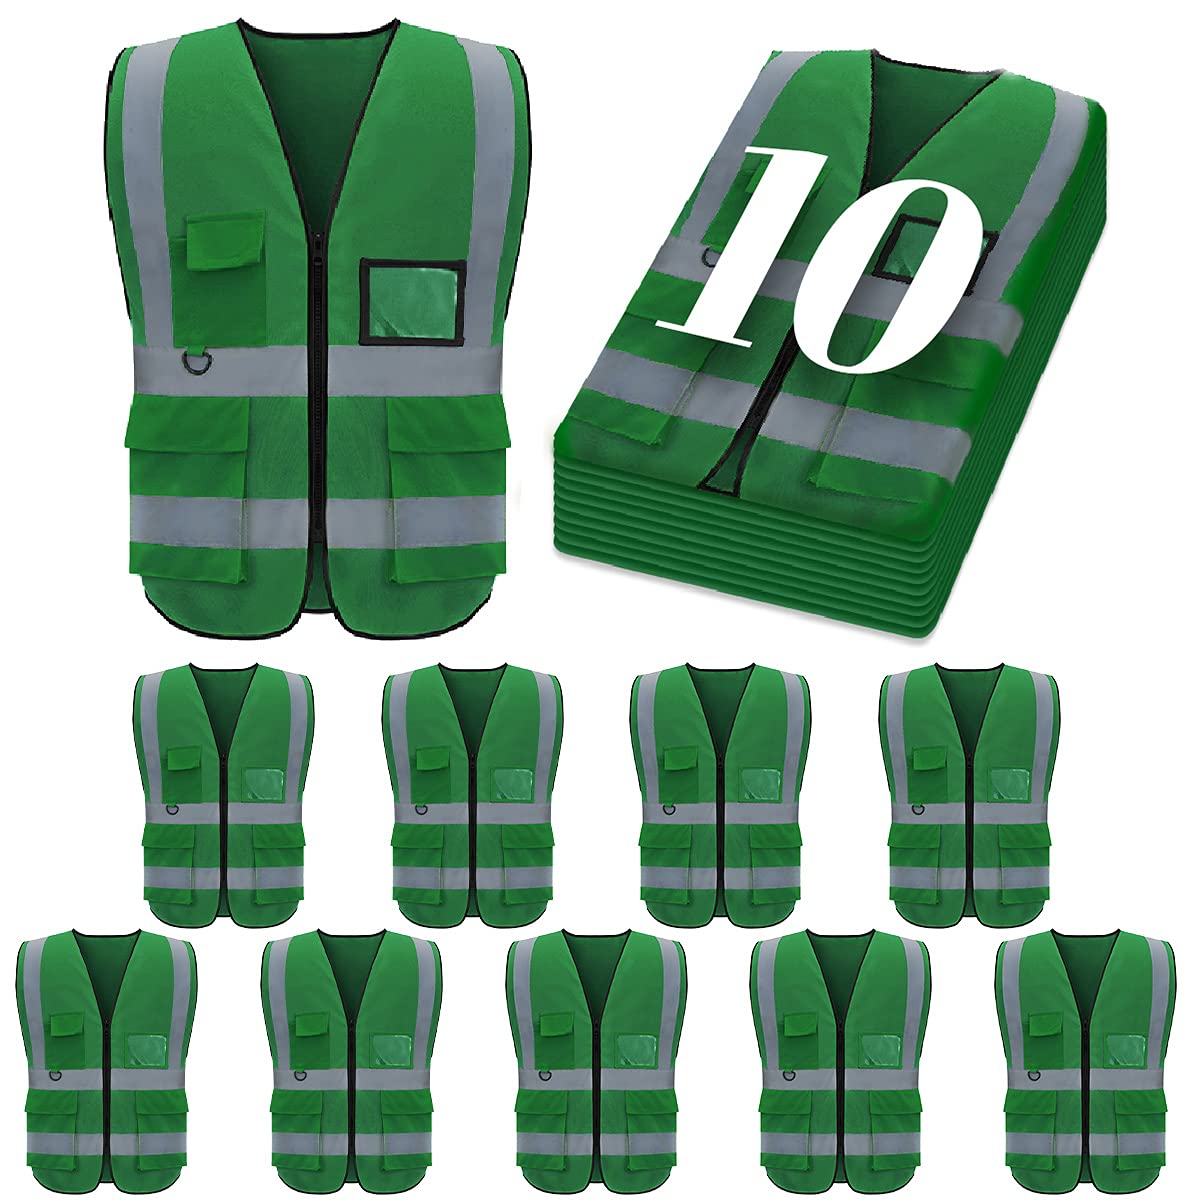 Custom safety vest customize hi vis vest reflective vest with logo green S M L XL XXL